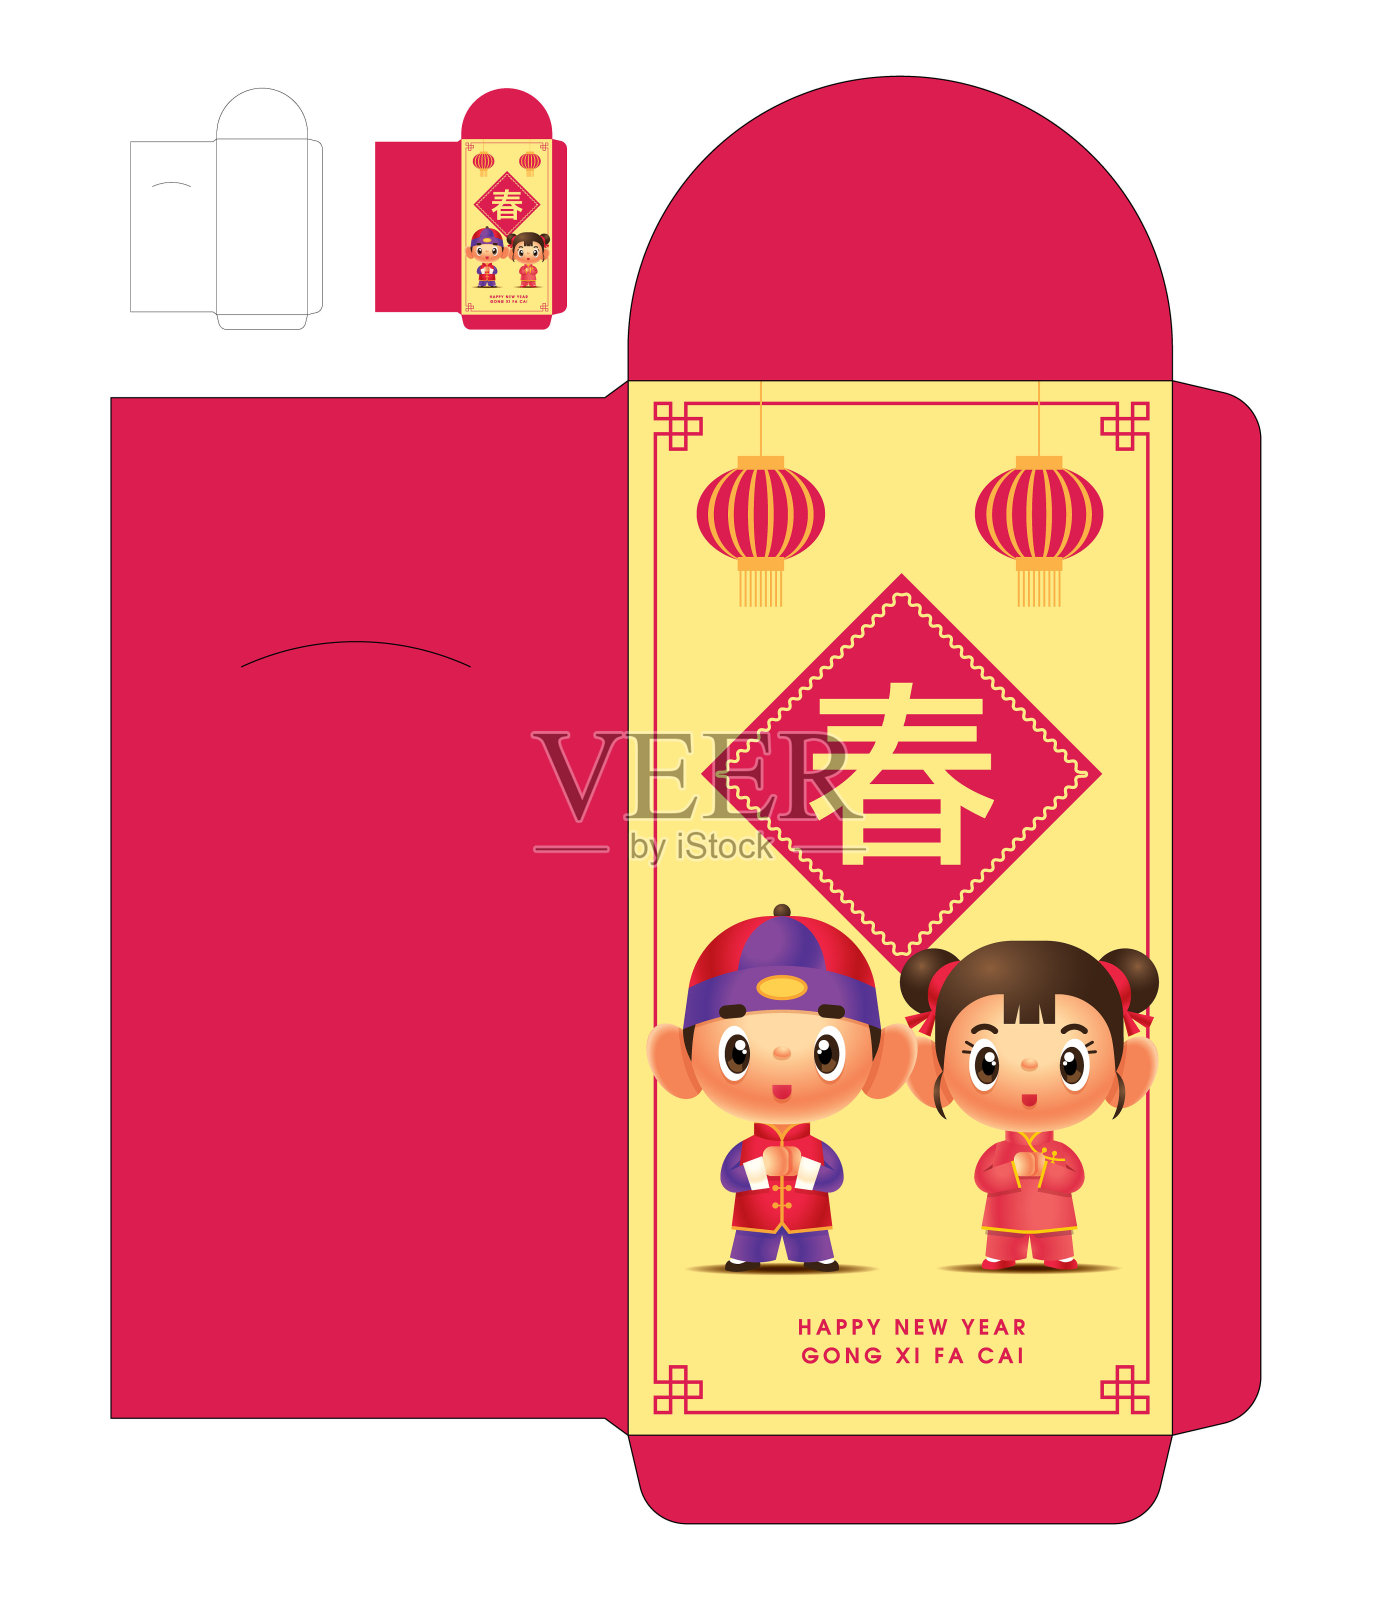 和加索尔。春节男女红包模板。红包模切模板。翻译:春天。——矢量模板设计模板素材